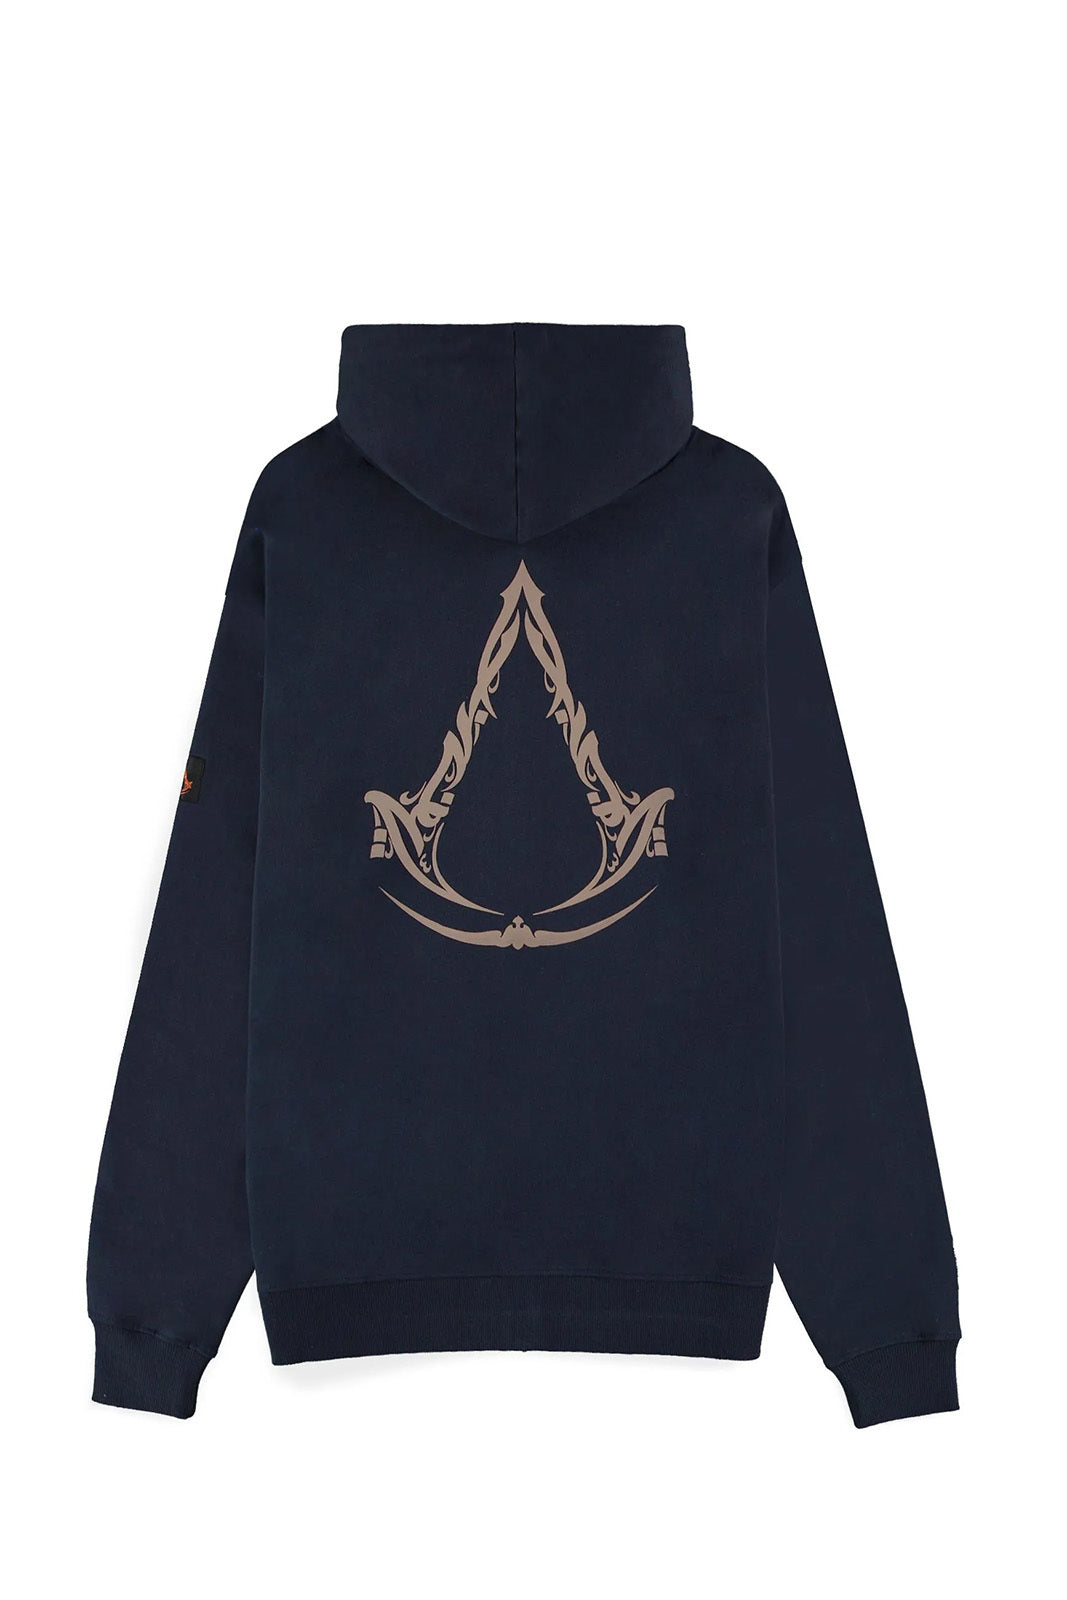 Zip-Hoodie - Assassin's Creed Mirage - Logo